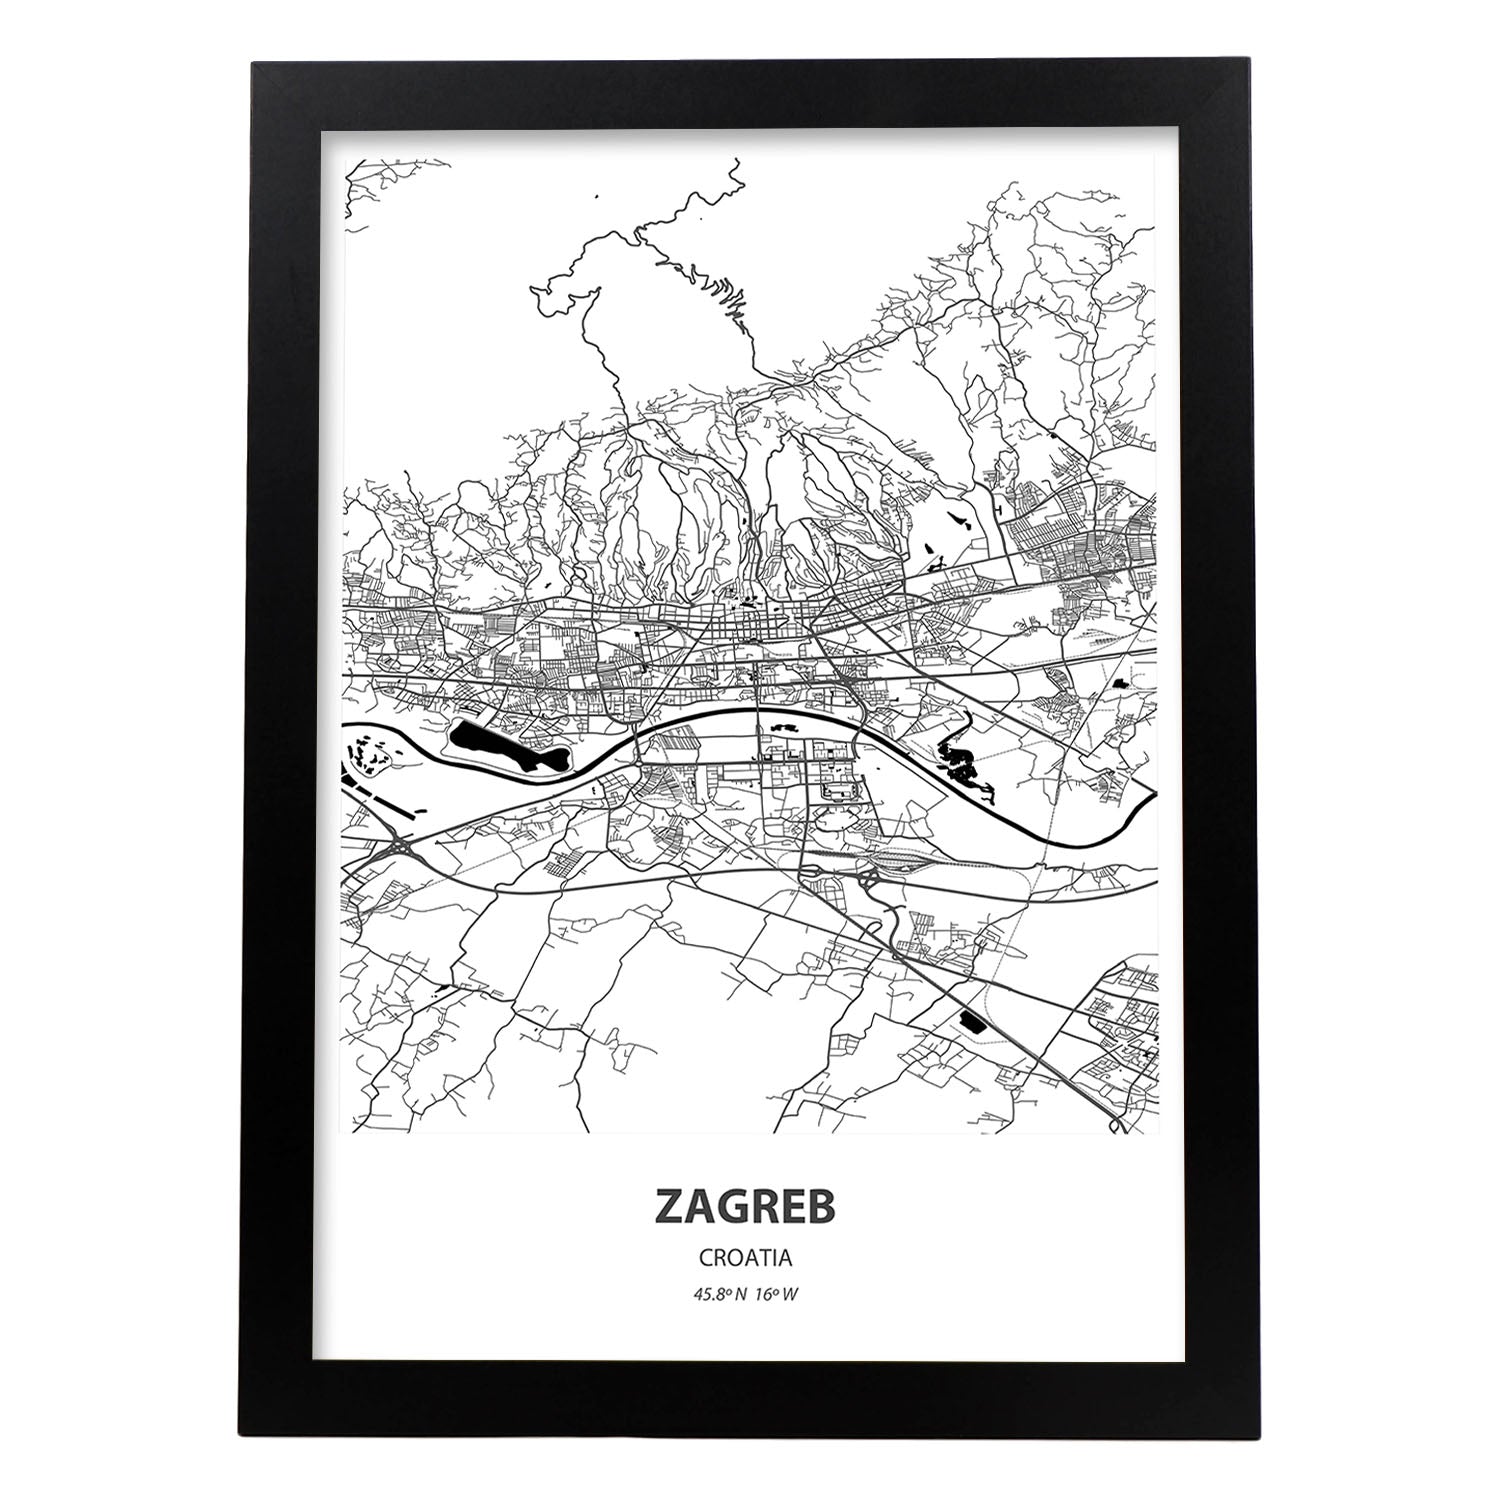 Poster con mapa de Zagreb - Croacia. Láminas de ciudades de Europa con mares y ríos en color negro.-Artwork-Nacnic-A3-Marco Negro-Nacnic Estudio SL